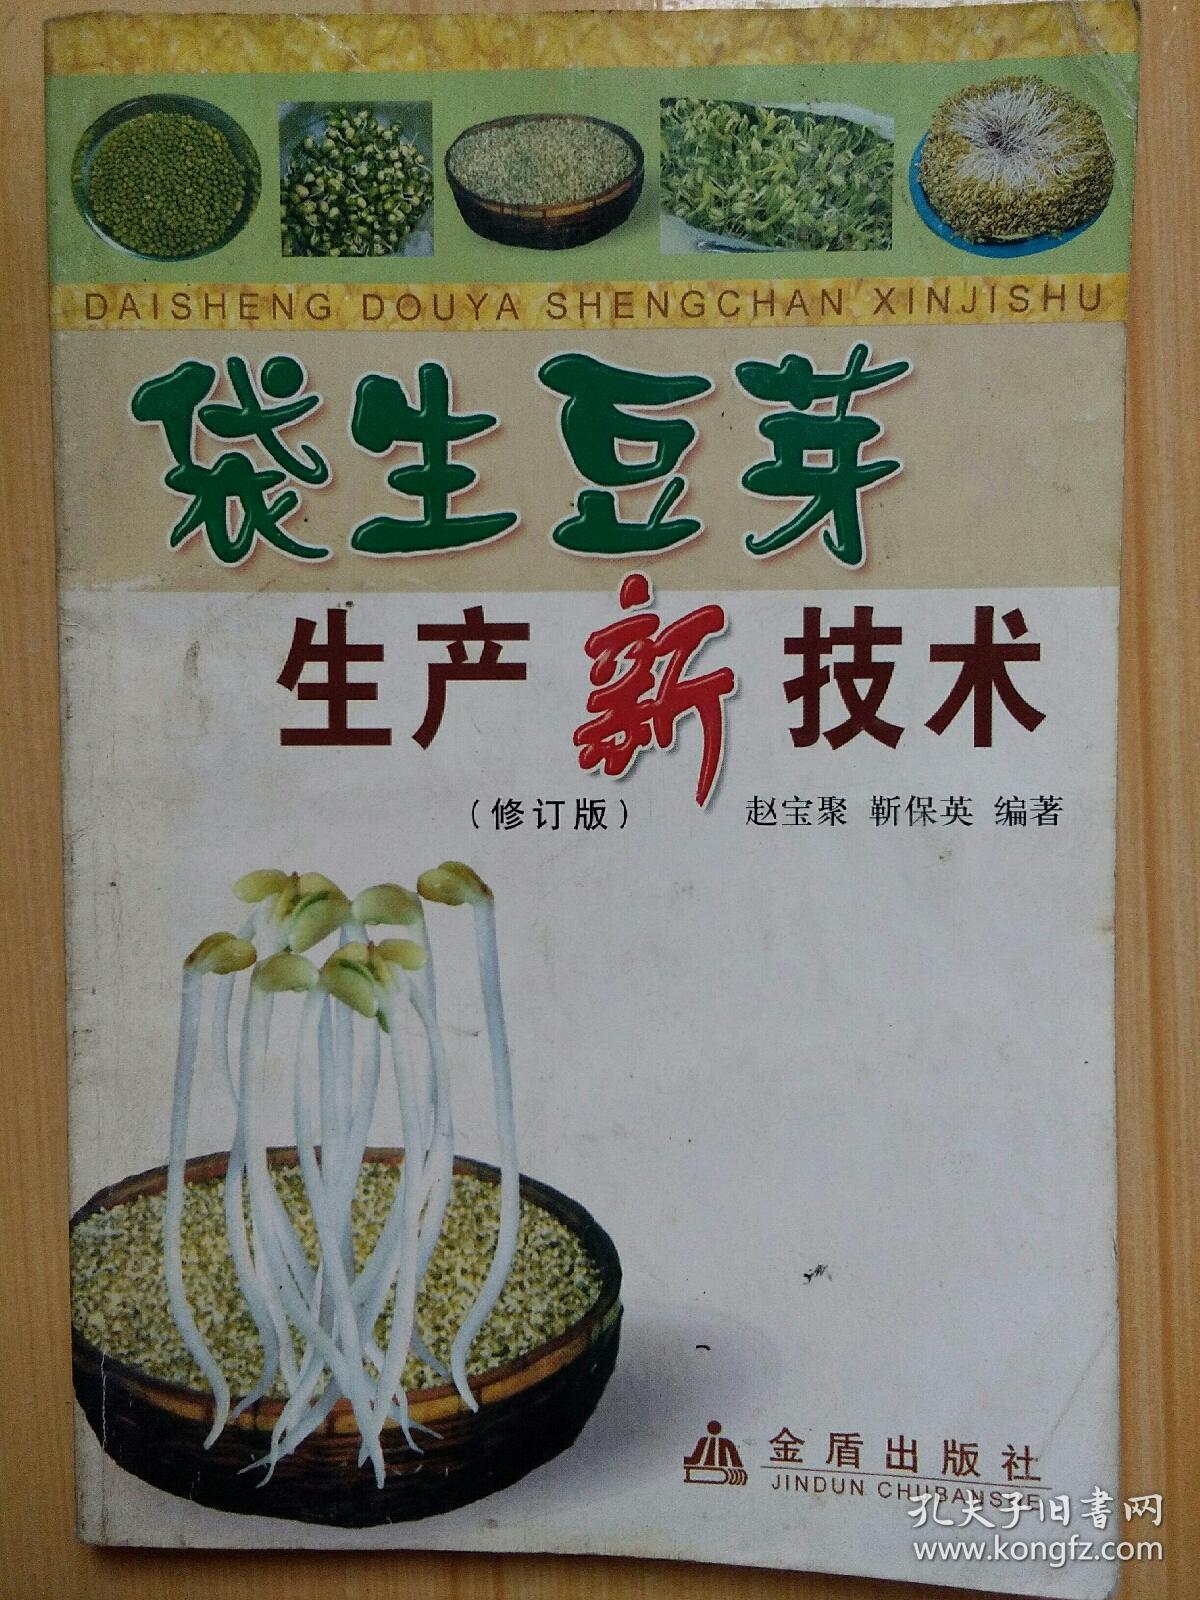 袋生豆芽生产新技术/修订版